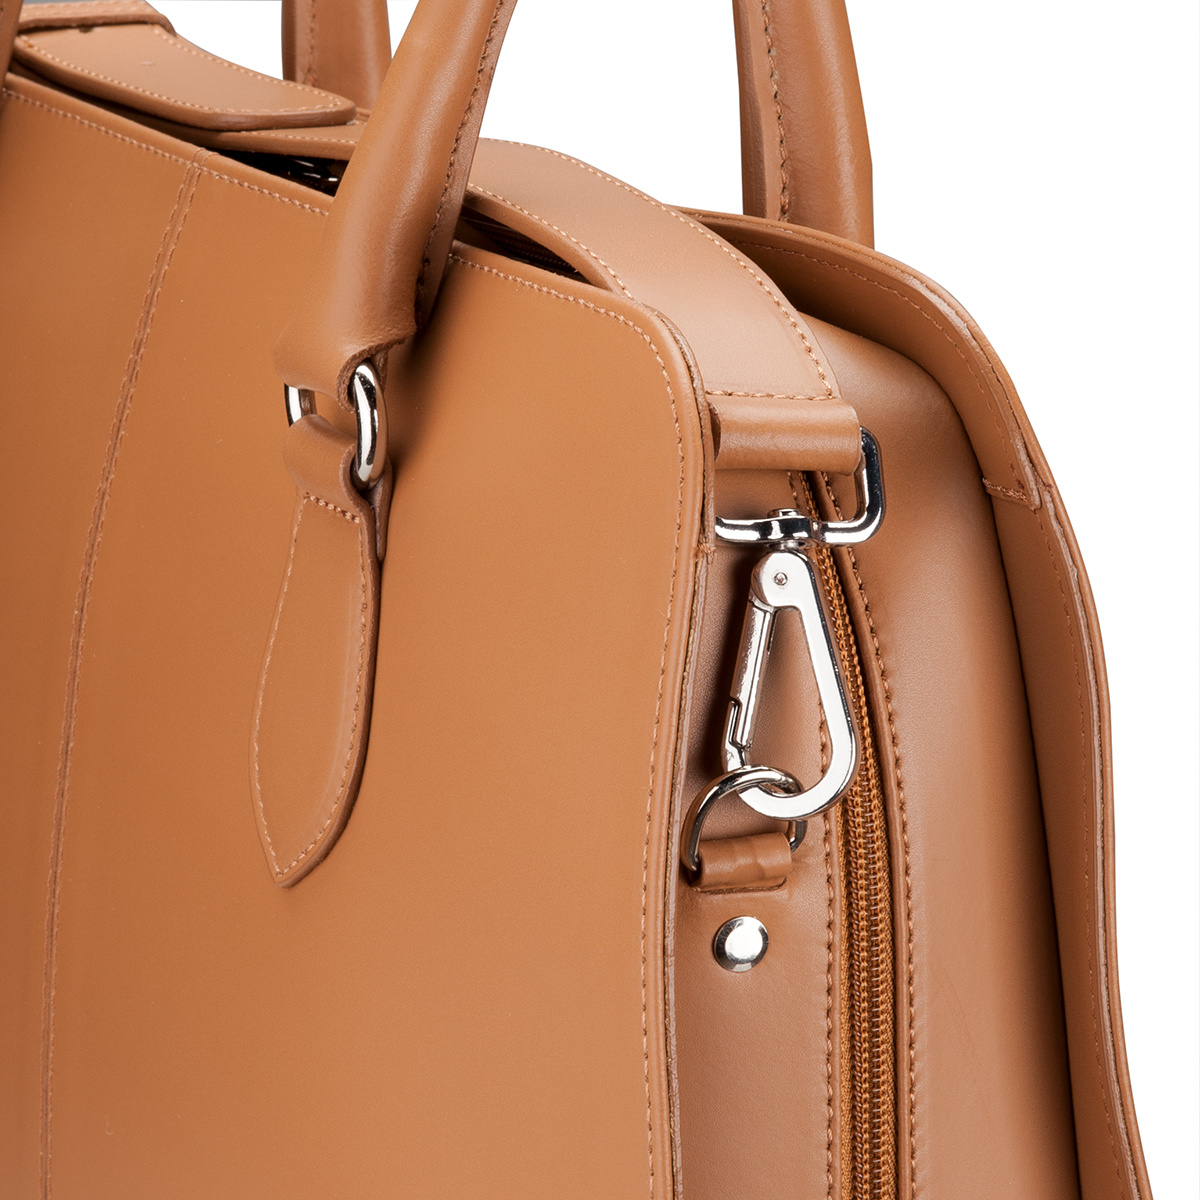 Shoulder Strap for Women 13.3 and 15.6 inch Laptop Bag - Messenger Bag - Split Leather - Brown-2